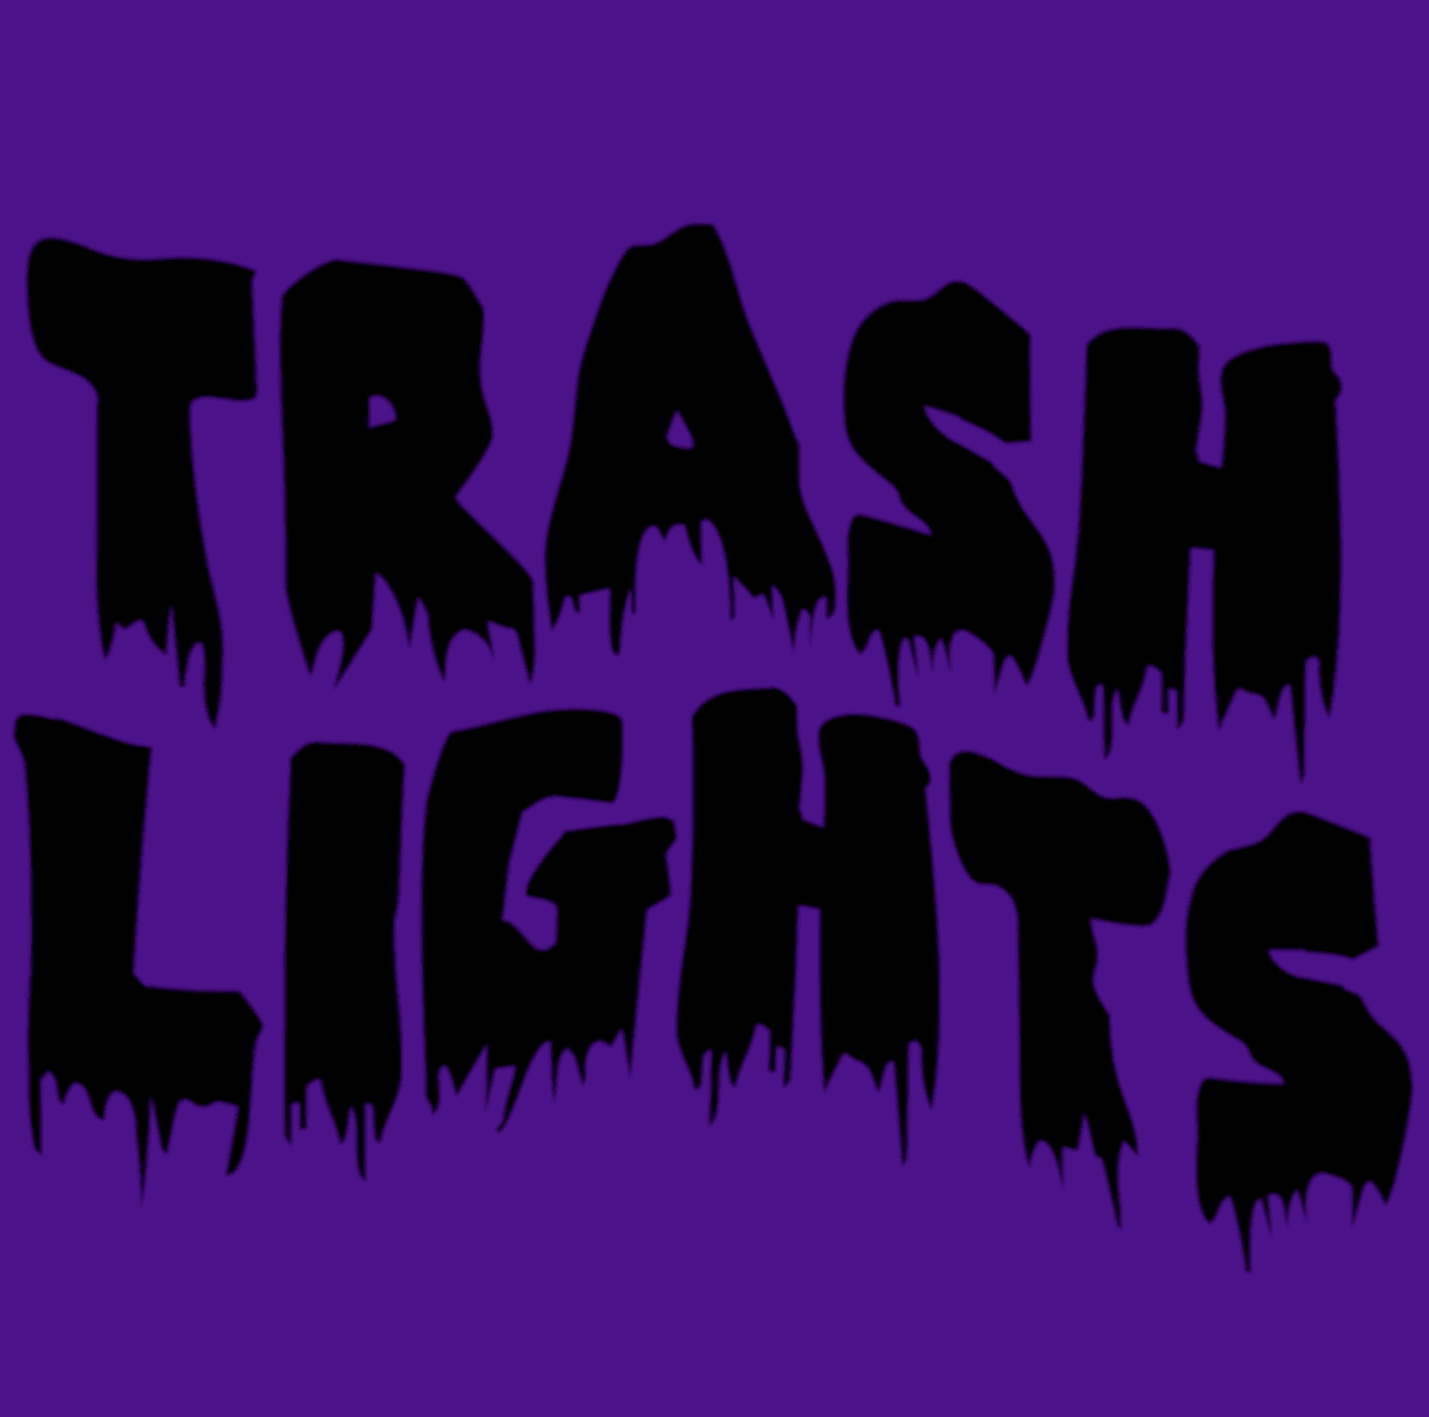 Trash_Lights